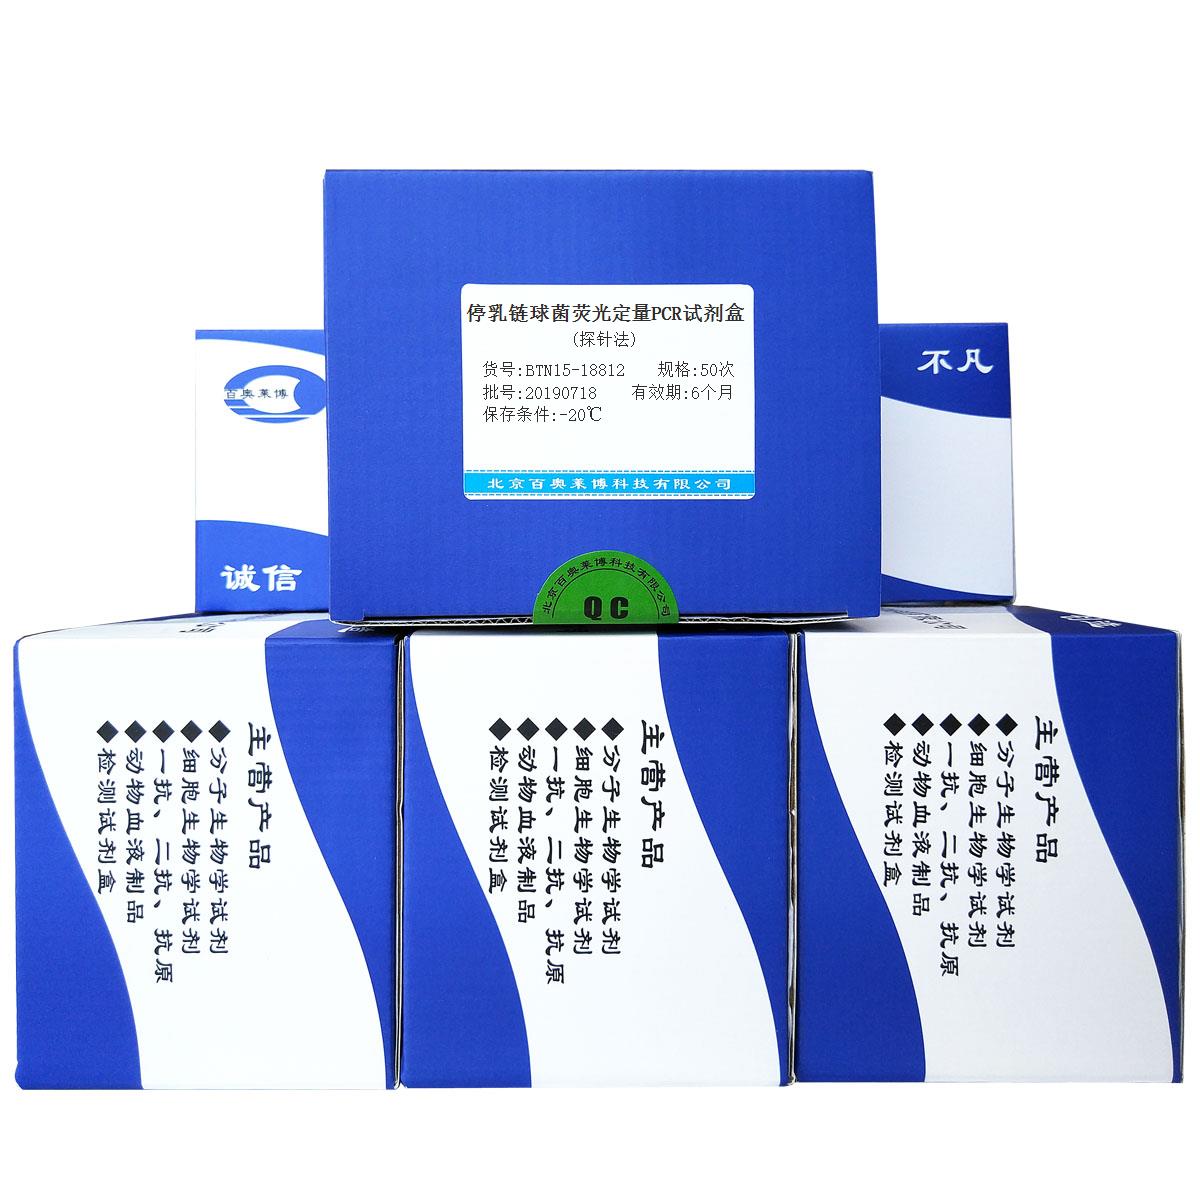 停乳链球菌荧光定量PCR试剂盒(探针法)